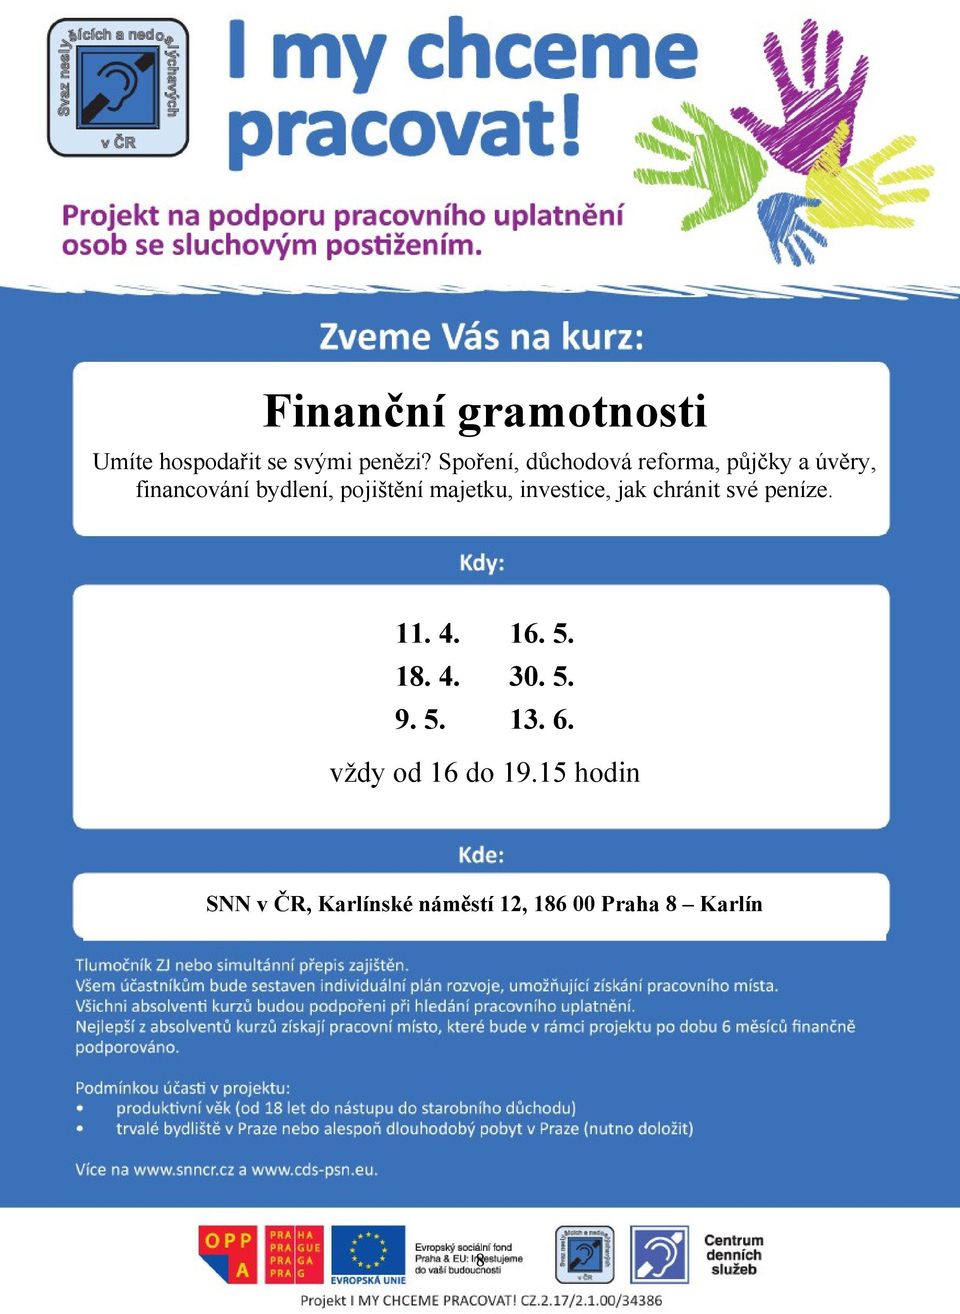 pojištění majetku, investice, jak chránit své peníze. 11. 4. 18. 4. 9. 5.